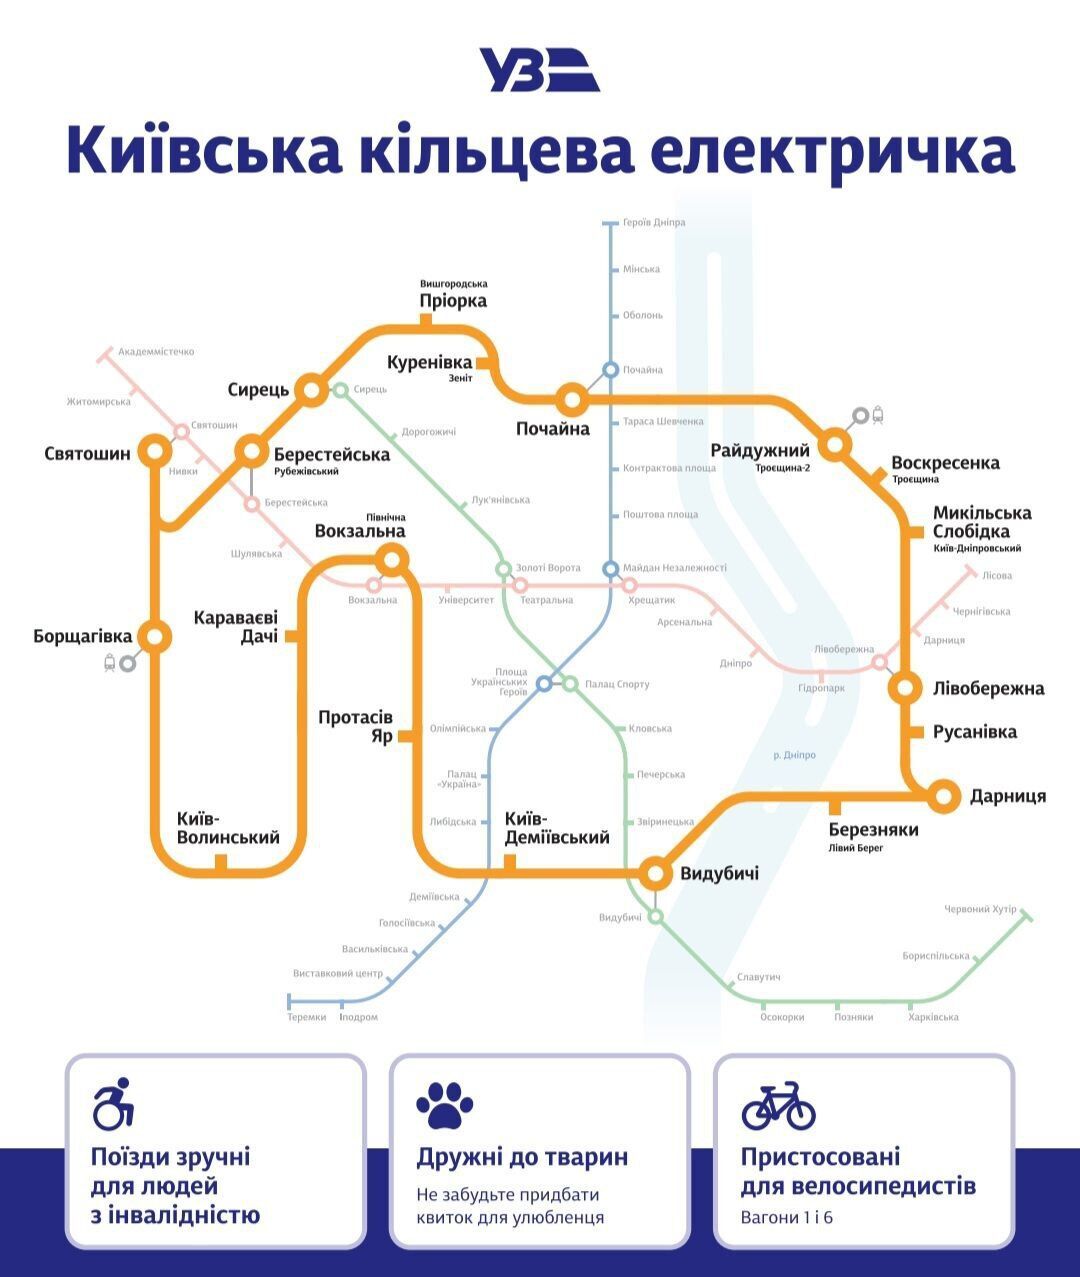 В Киеве переименовали станции городской электрички: новые названия и карта